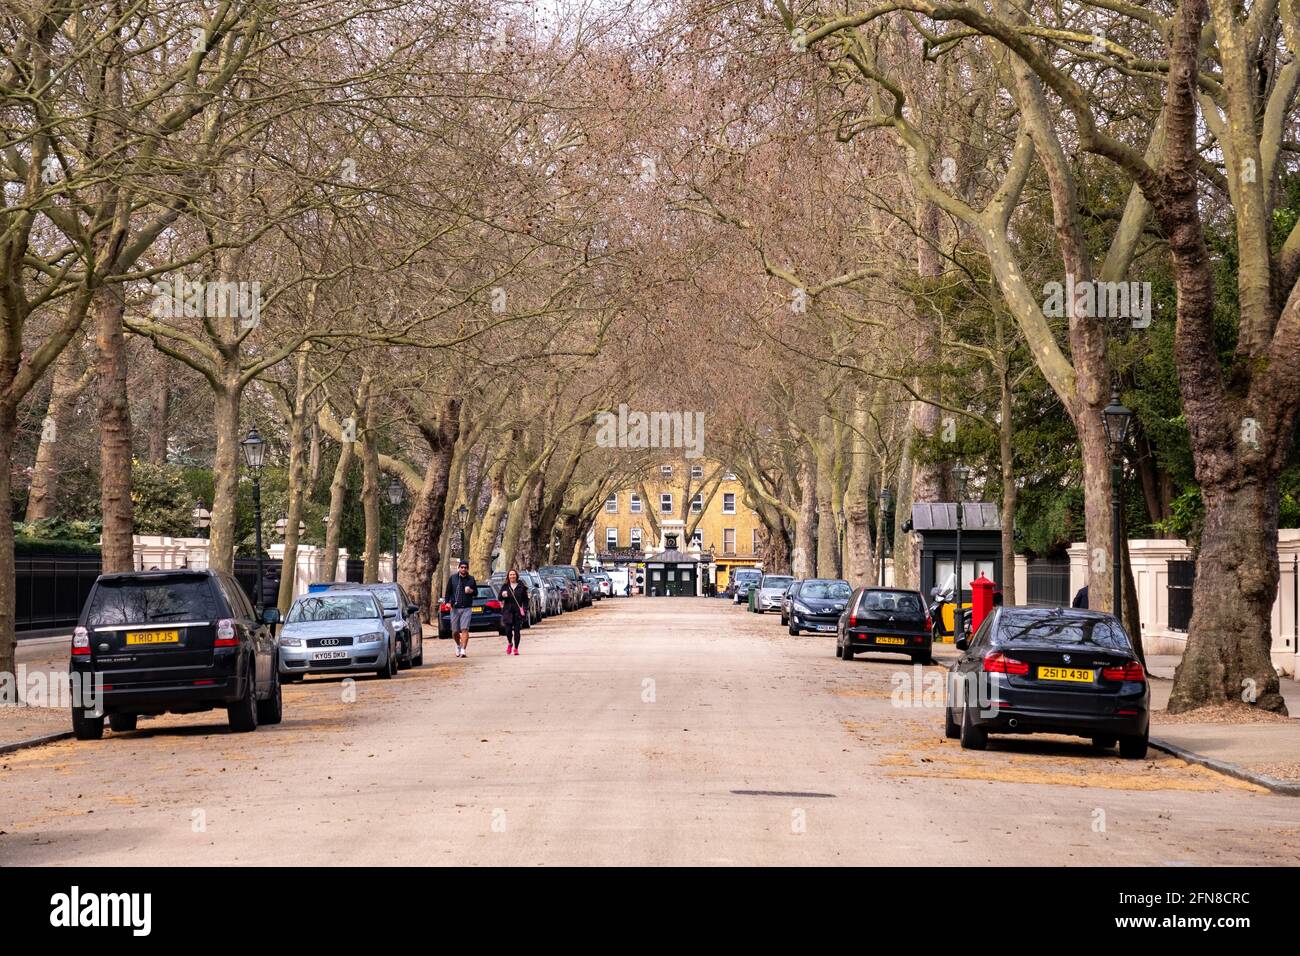 Londres - Mai 2021: Kensington Palace Gardens, une rue de luxe avec des demeures fermées et des bâtiments d'ambassade Banque D'Images